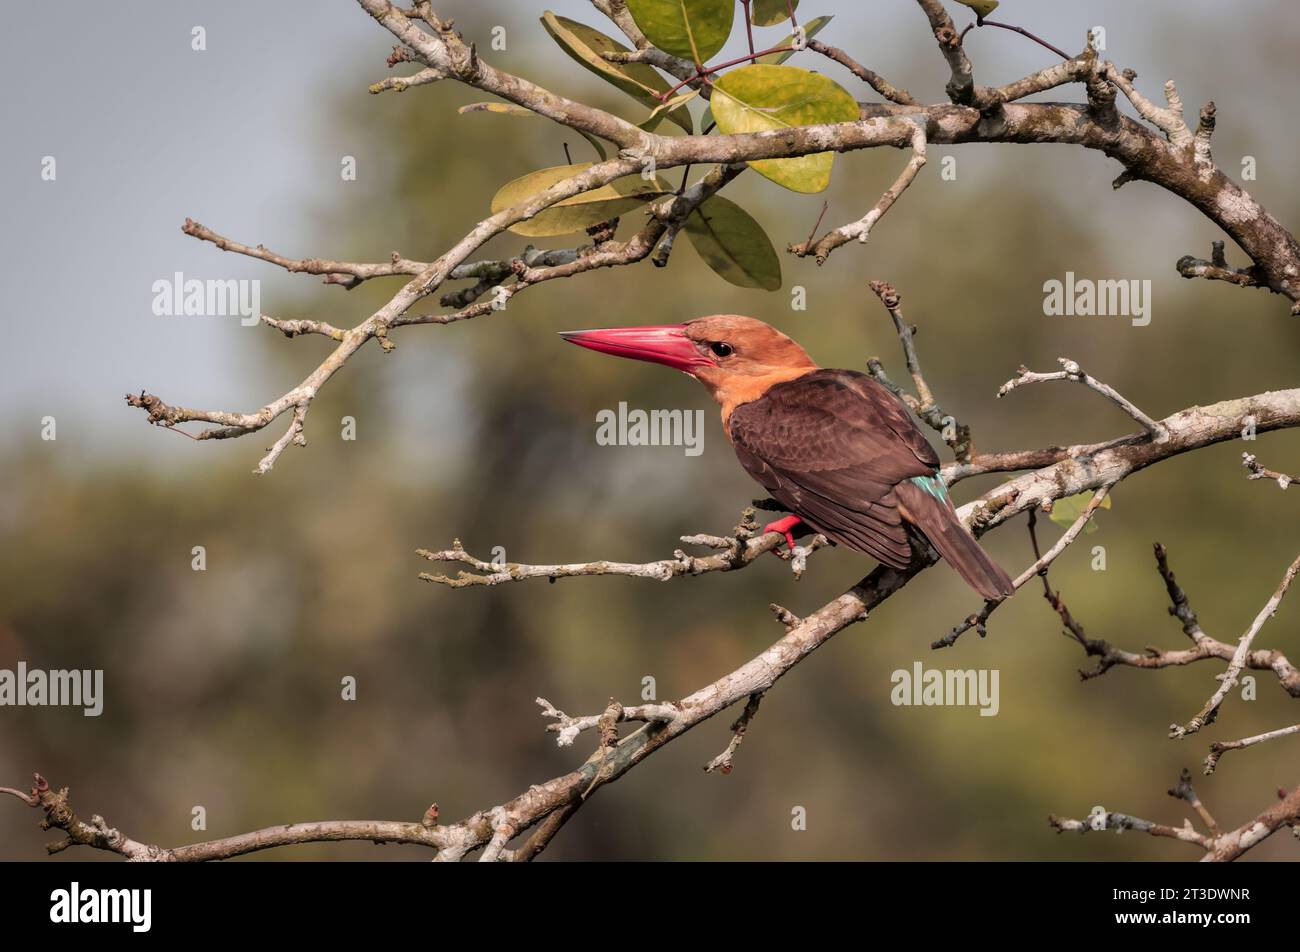 Der braungeflügelte eisvogel ist eine Vogelart aus der Unterfamilie Halcyoninae. Dieses Foto wurde von sundarbans aufgenommen. Stockfoto